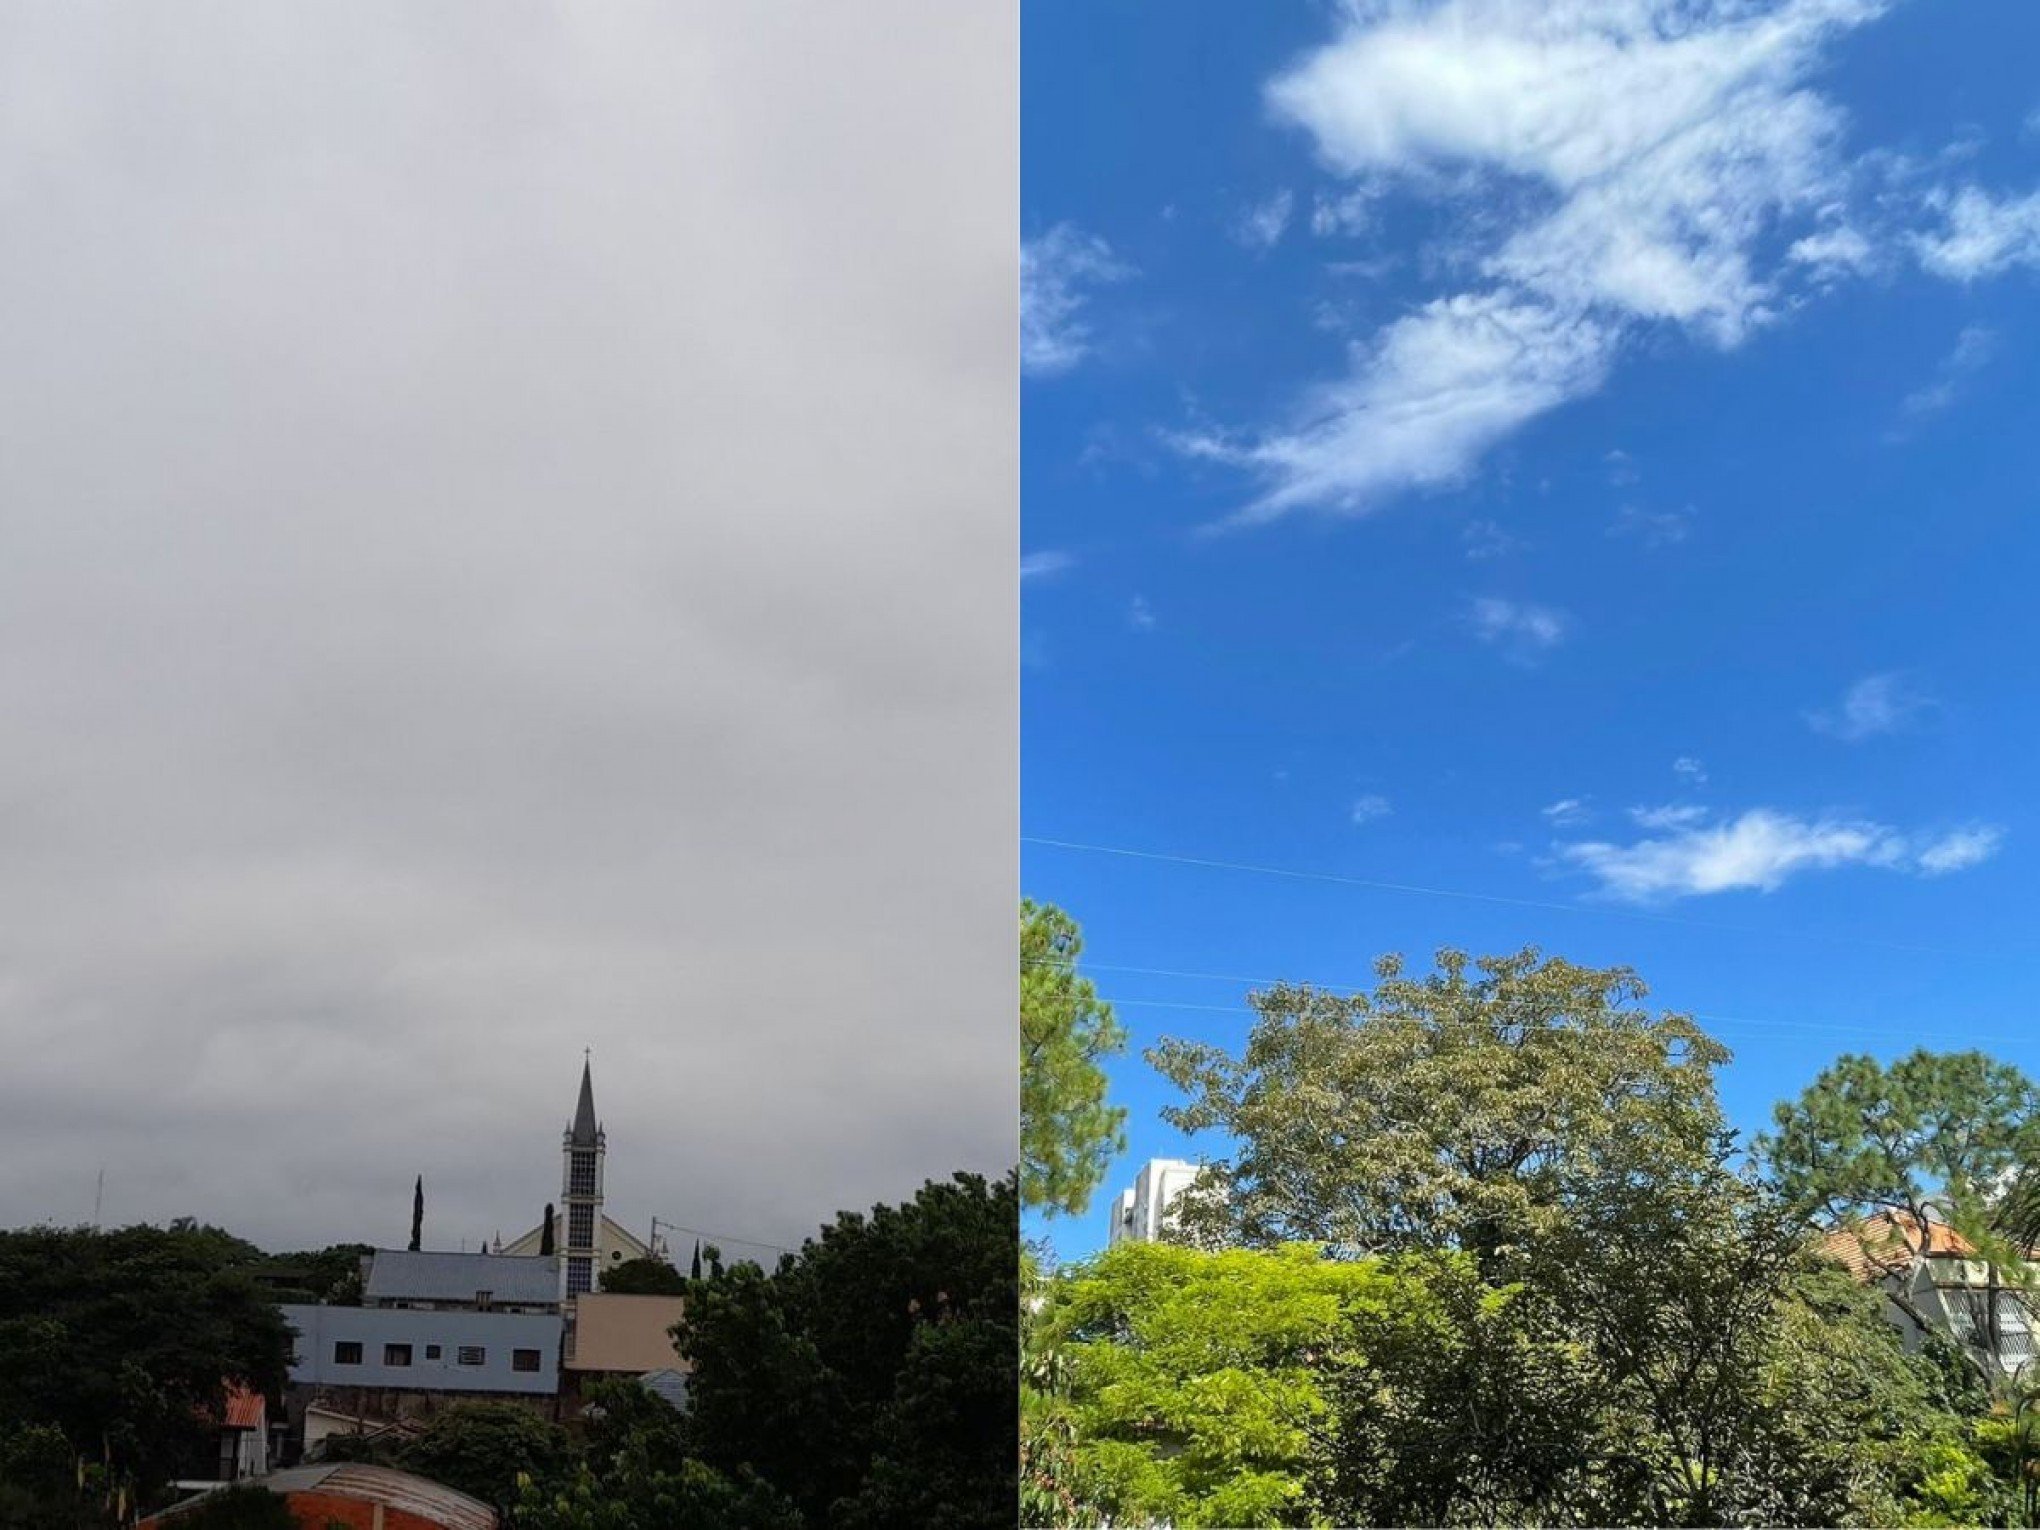 Tempo nublado e ensolarado ao mesmo tempo? Região metropolitana tem condições distintas